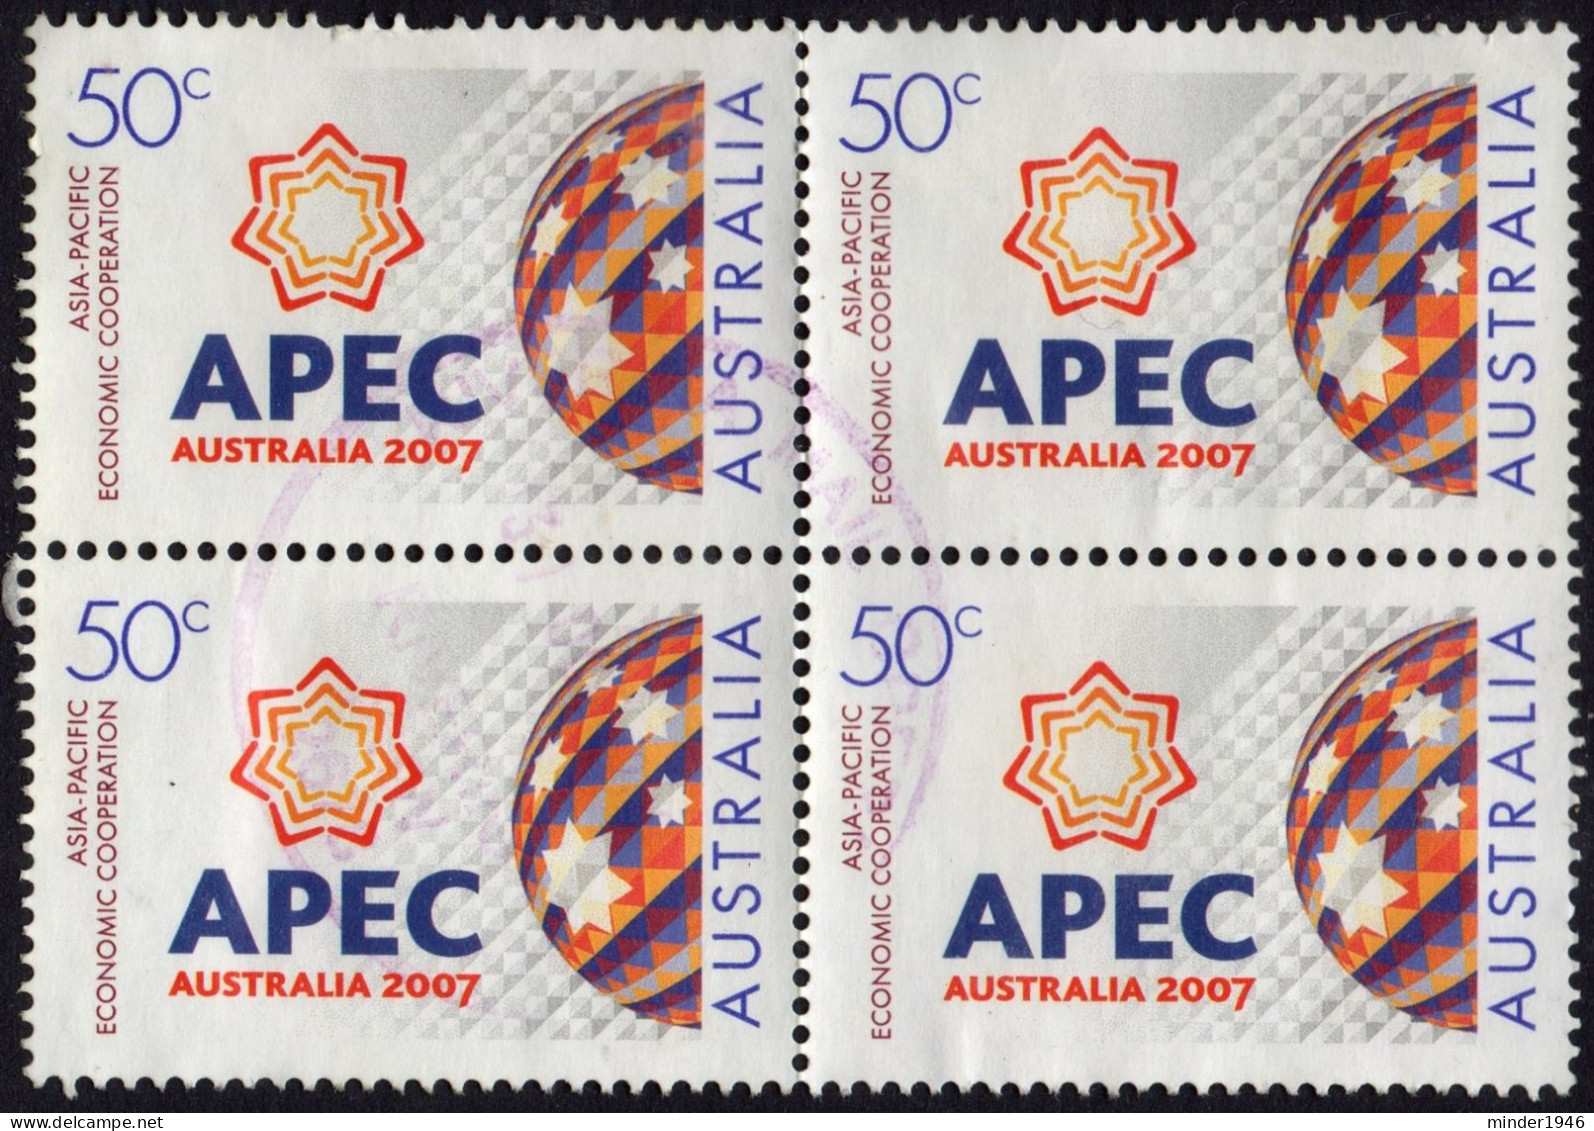 AUSTRALIA 2007 50c Block Of 4 Multicoloured, Asia-Pacific Economic Cooperation APEC SG2858 FU - Used Stamps